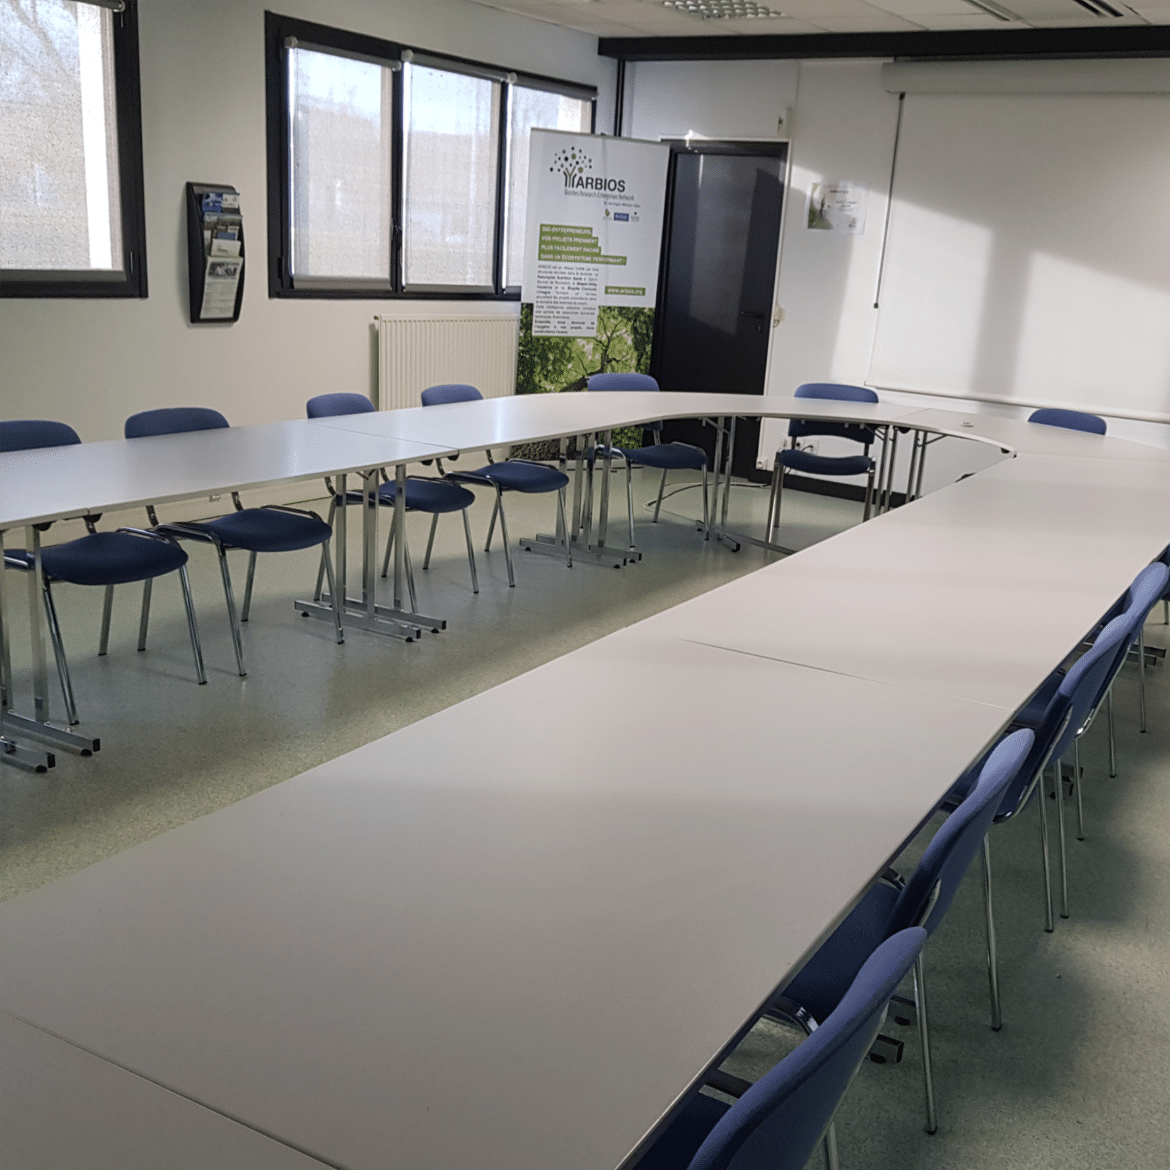 Les entreprises du Biopôle Clermont-Limagne ont accès à des services mutualisés.
Sur le site de Saint-Beauzire, deux salles de réunion de 20 et 50 personnes peuvent être louées seules ou réunies en une seule salle [...]